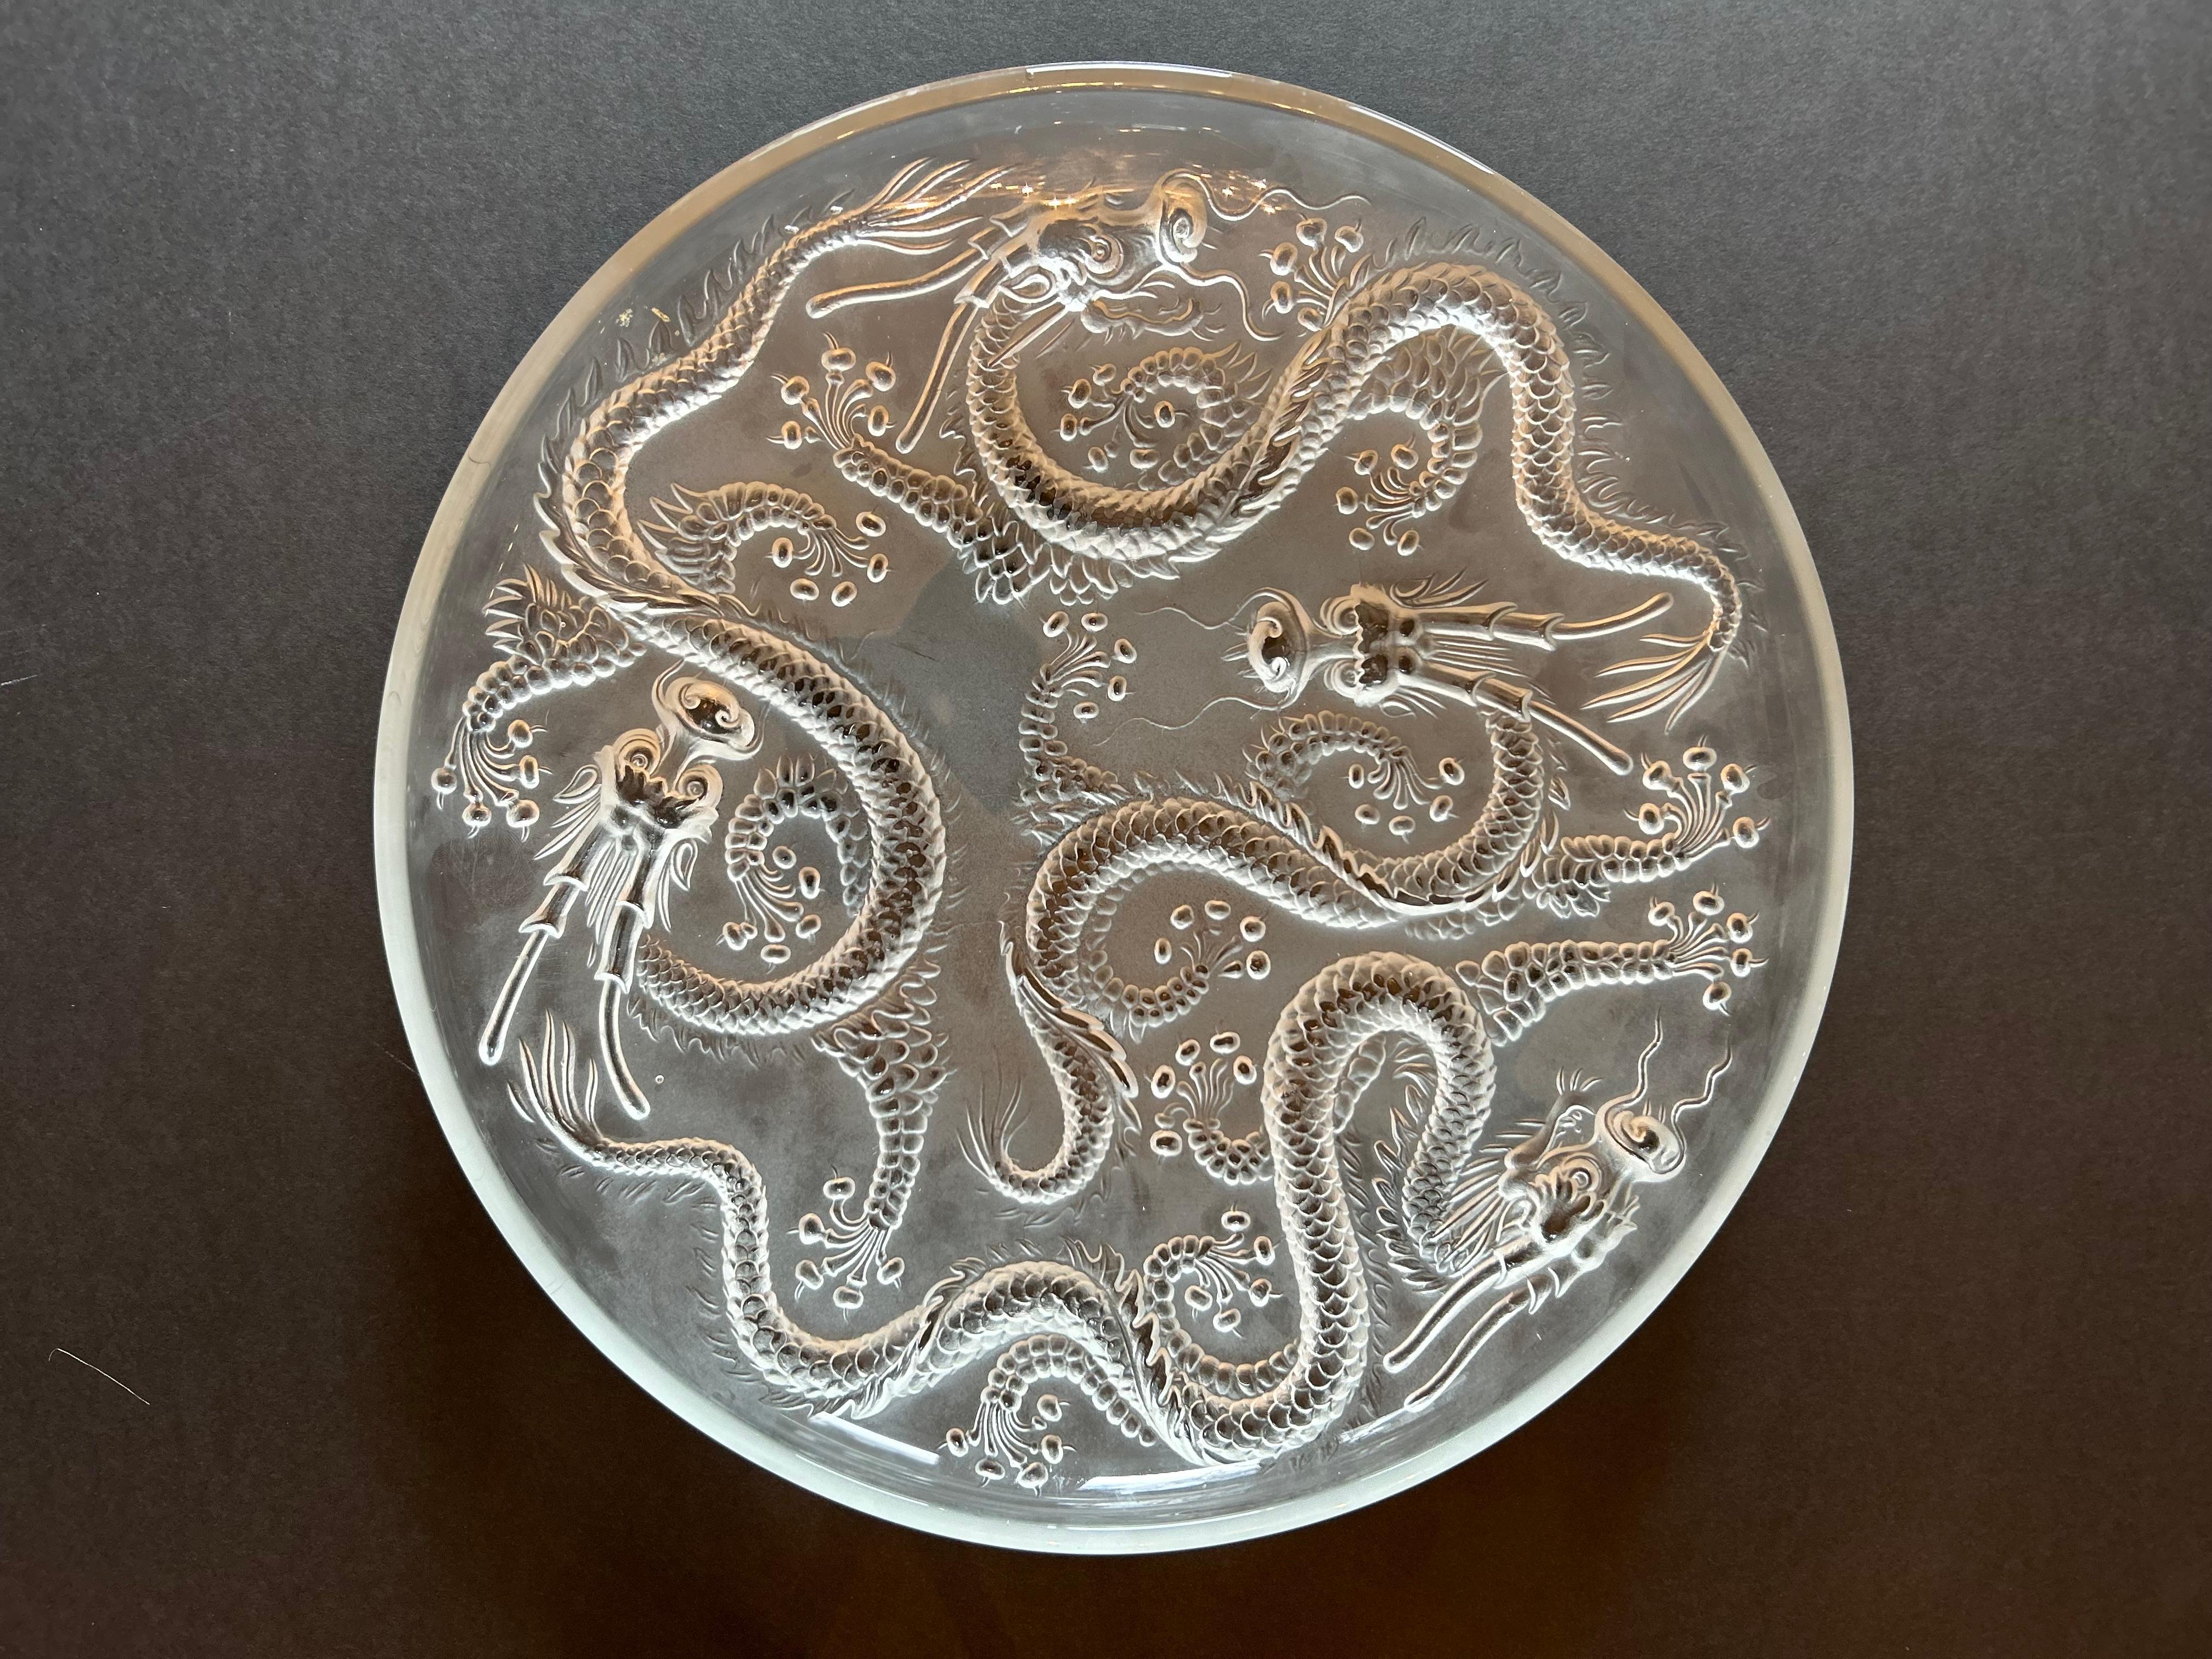 Un fabuleux bol en verre d'art de la période Art déco, conçu par Josef Inwald pour Barolac. Ce bol présente des dragons sinueux de style chinois dans un décor givré.
verre d'art avec une finition mate, un haut relief et des détails complexes.